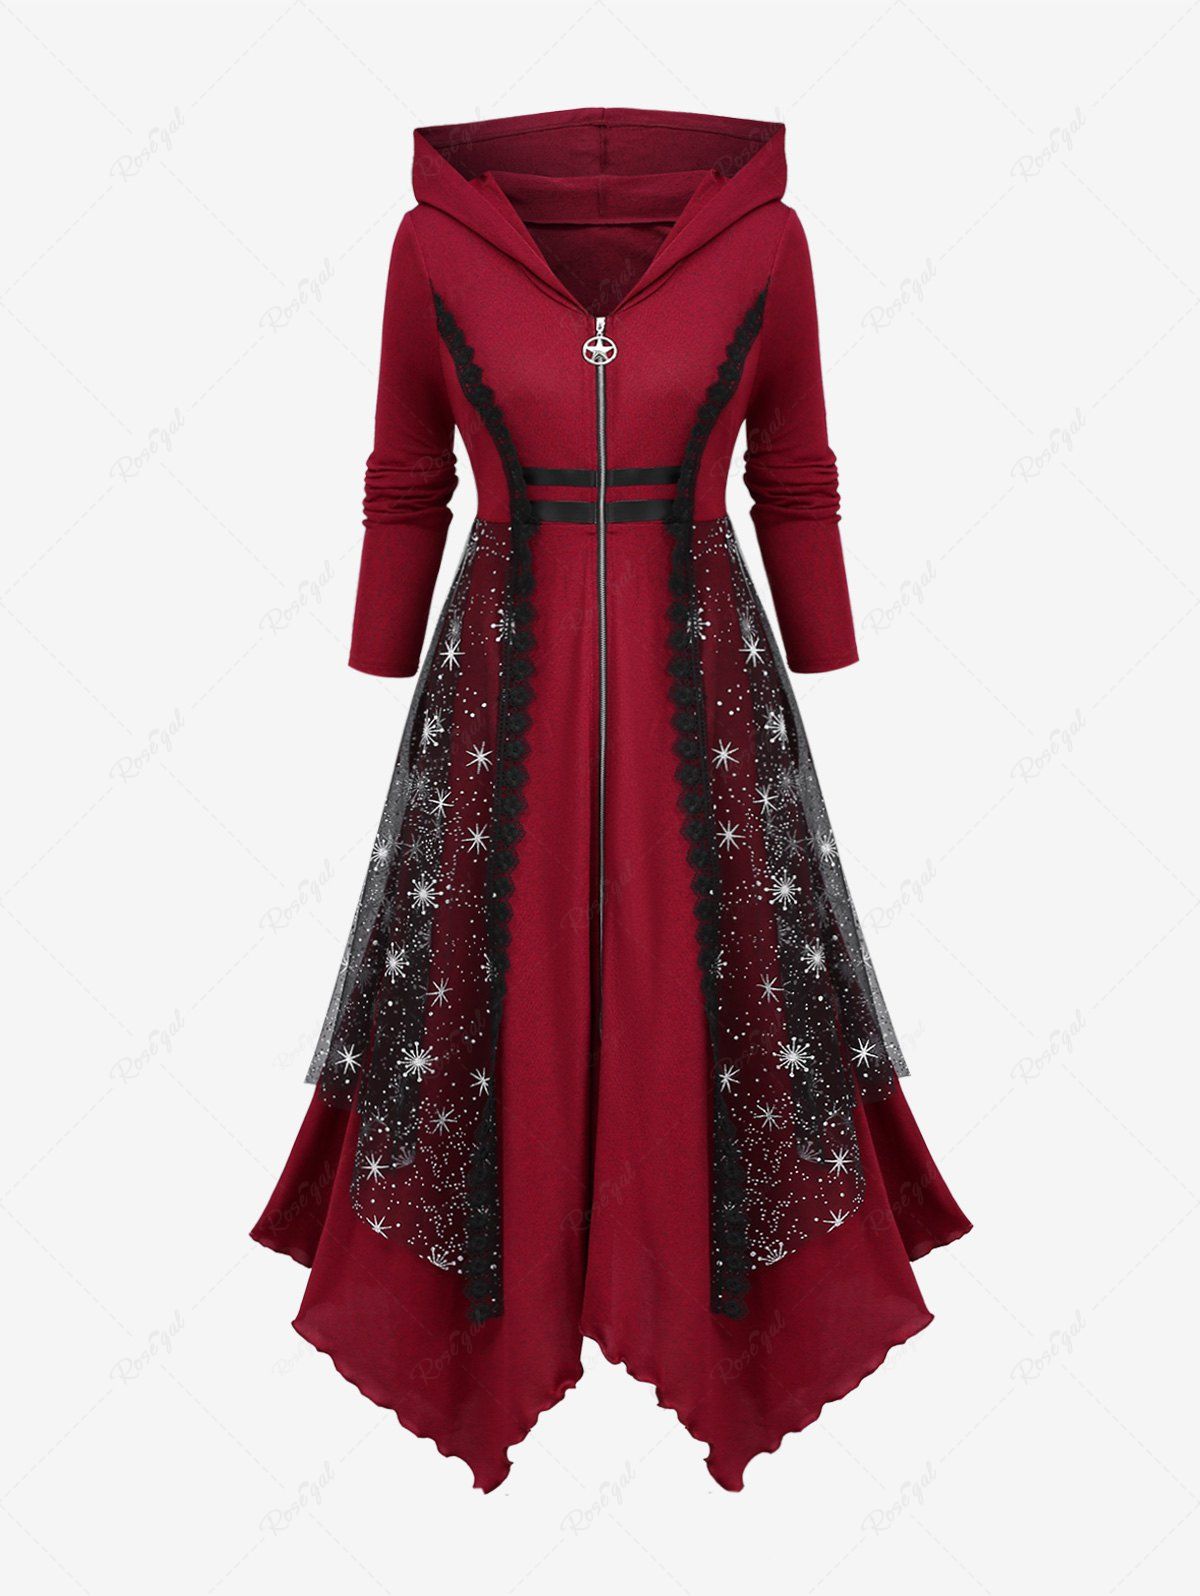 Plus Size Mesh Layered Lace Trim Handkerchief Zipper Hooded Coat Rouge foncé 1X | US 14-16